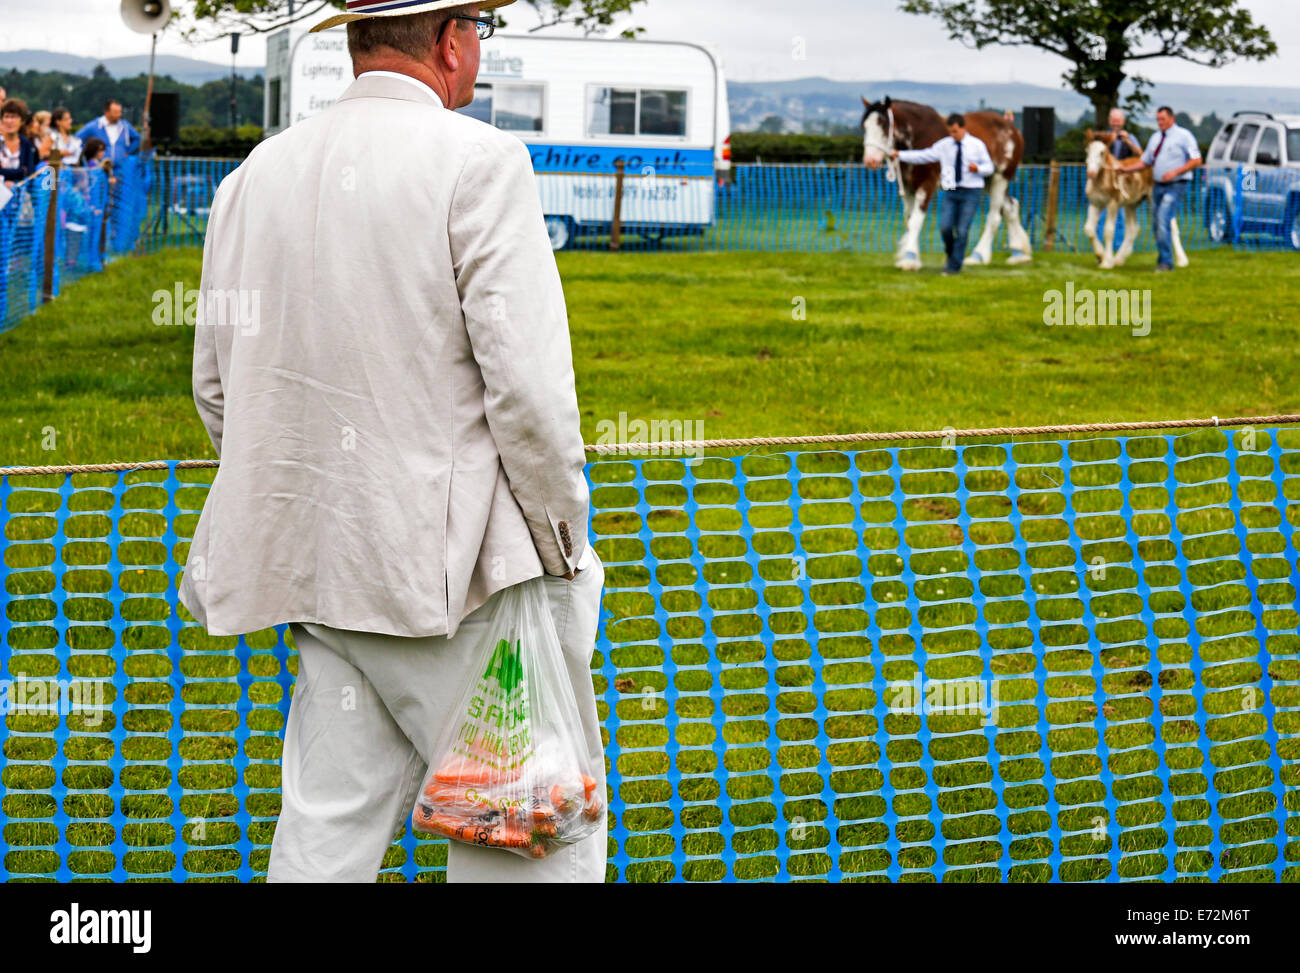 Uomo con un sacchetto di carote guardando uno spettacolo di cavalli in un paese equo, vicino a Glasgow, Scotland, Regno Unito Foto Stock